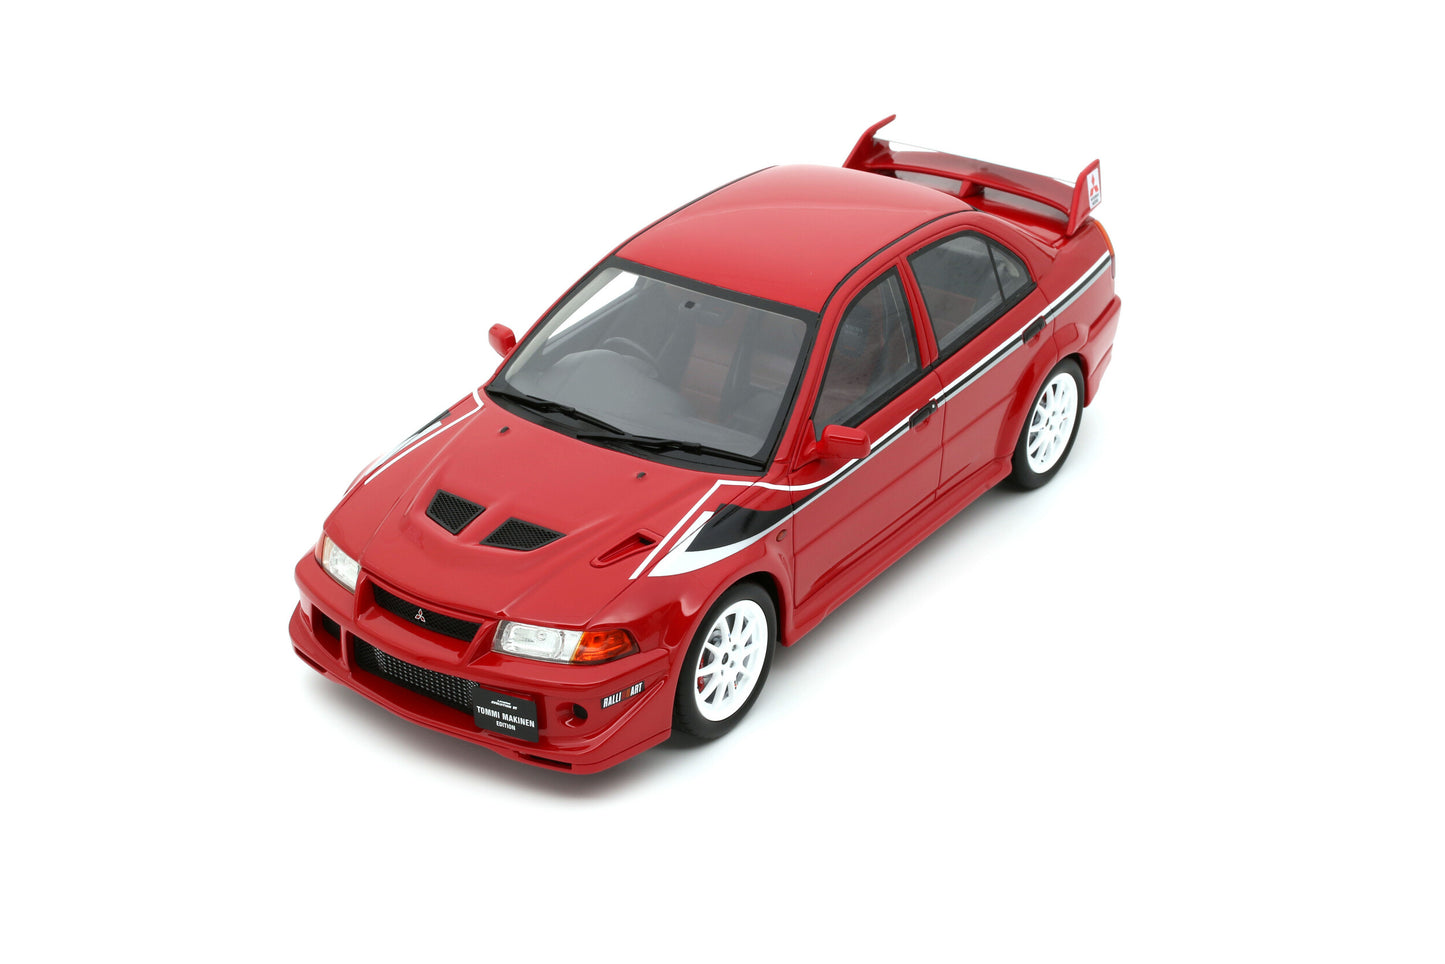 OttOmobile - Mitsubishi Lancer Evo VI "Tommi Makinen Edition" (Passion Red) 1:18 Scale Model Car